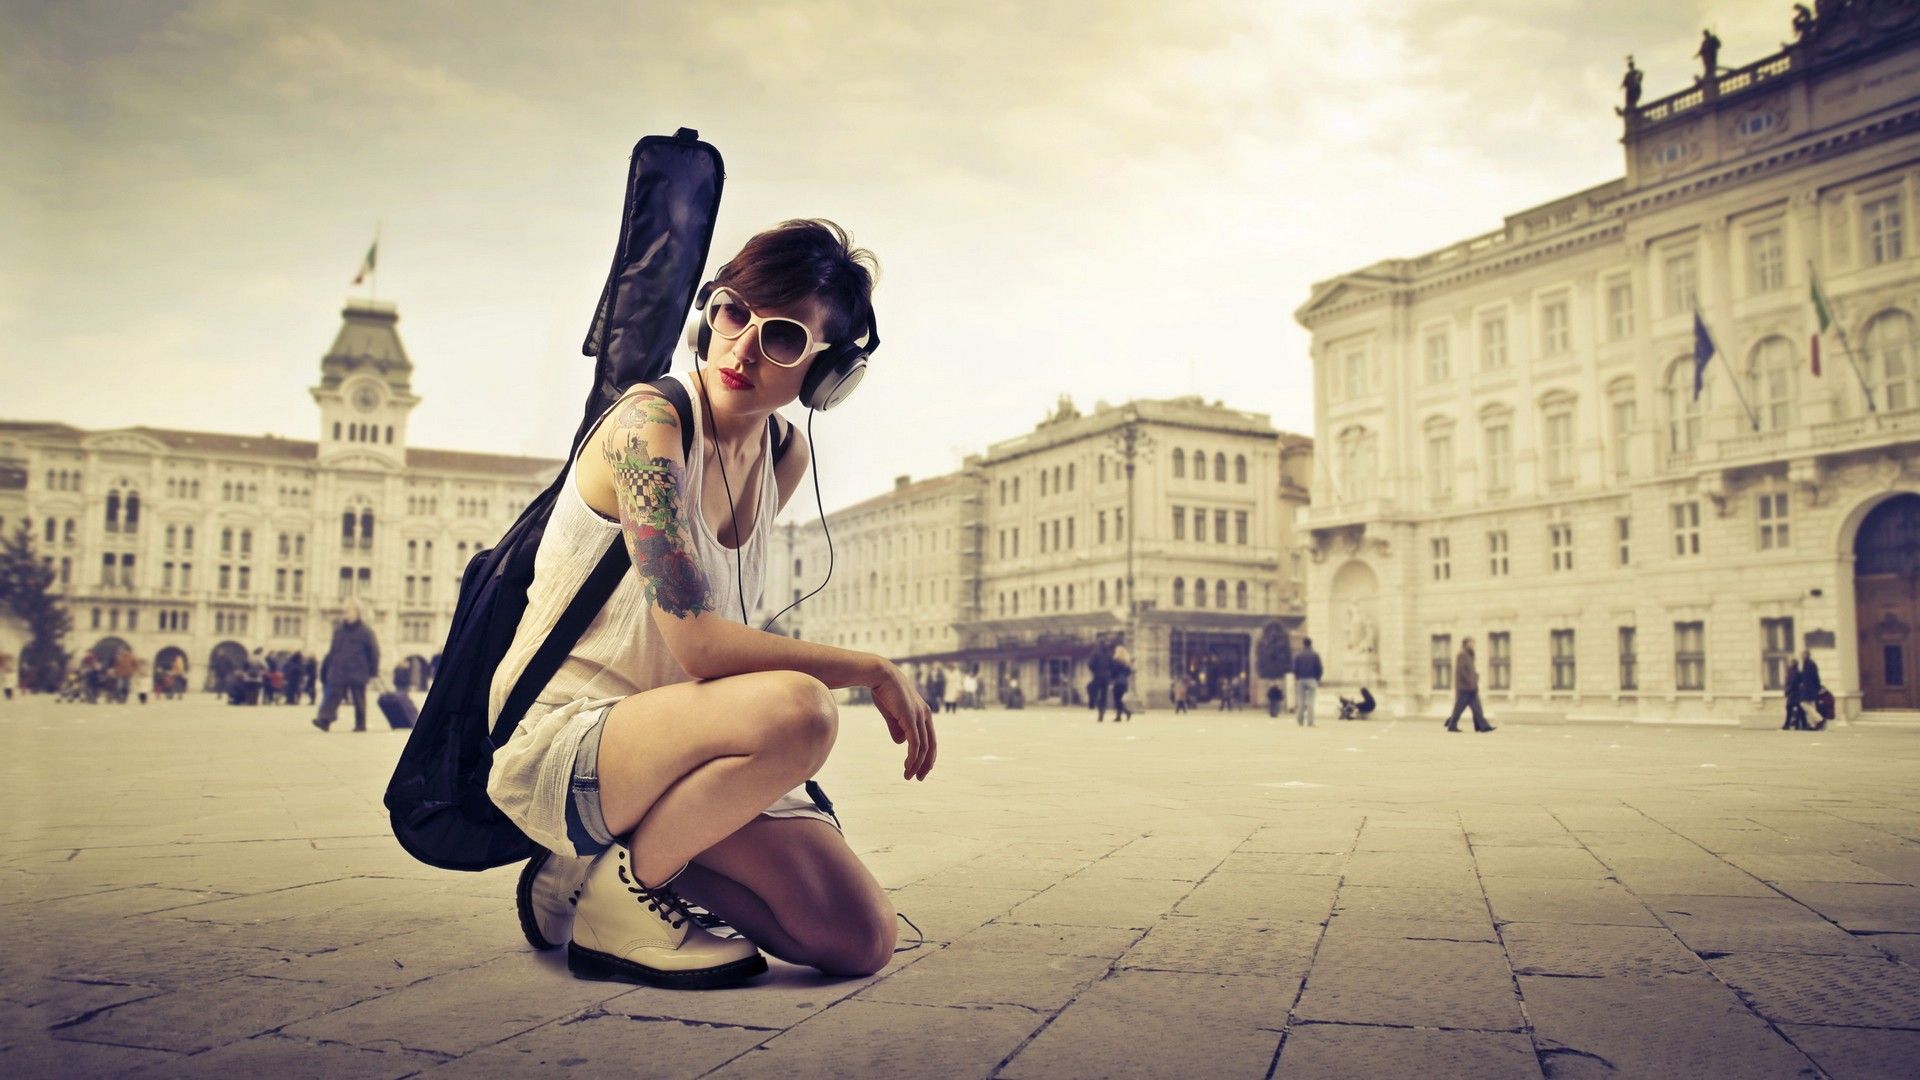 sfondo di una ragazza con la chitarra,danza,ballo di strada,fotografia,architettura,seduta